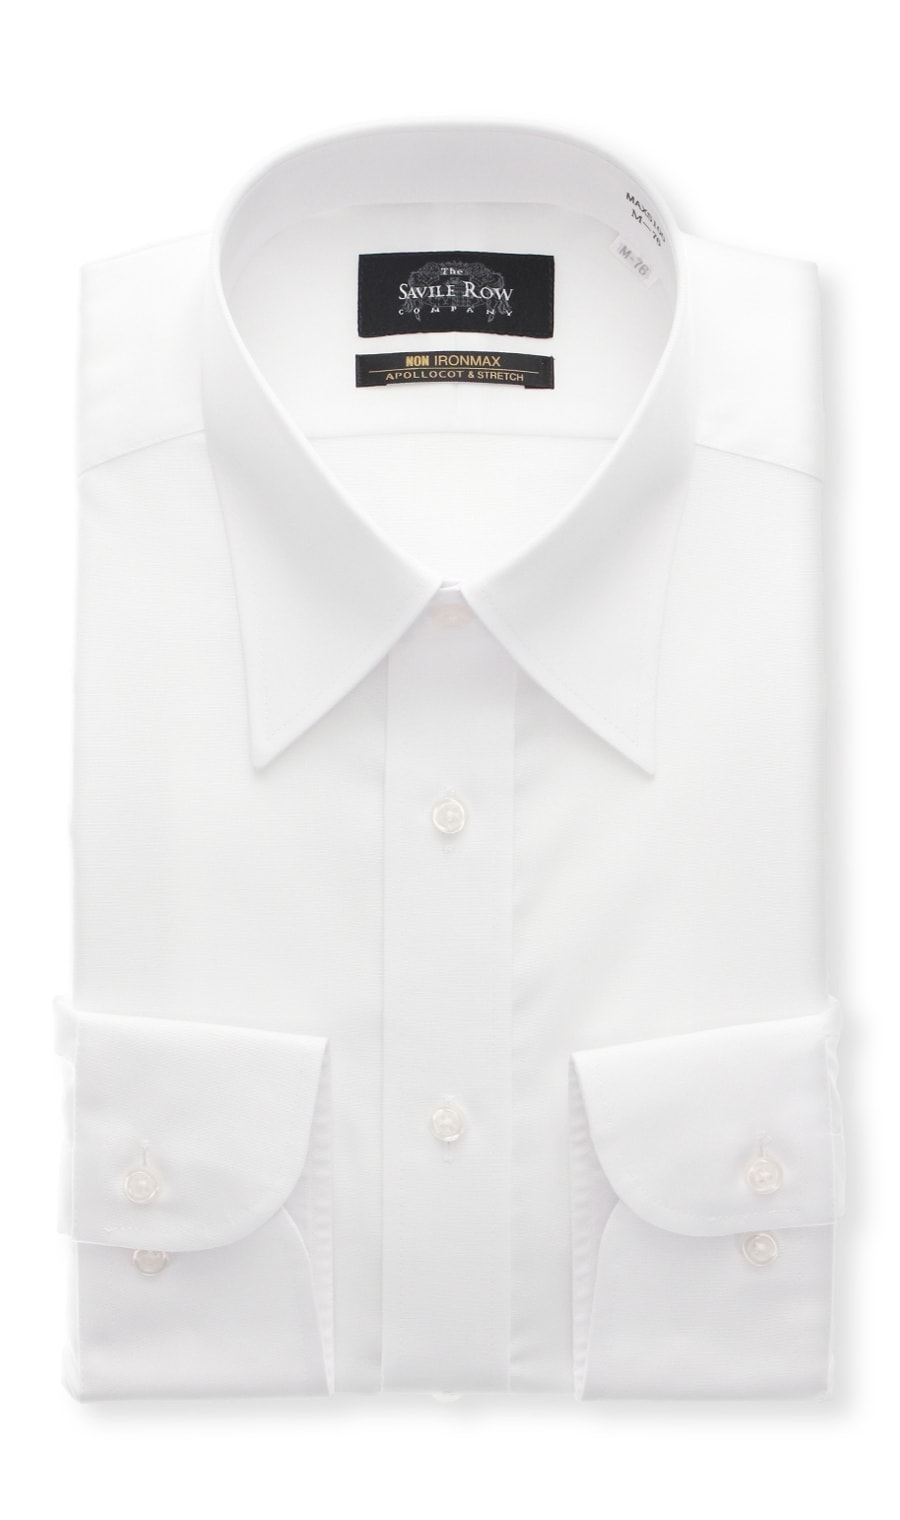 レギュラーカラースタンダードワイシャツ【キングトール】【NON IRONMAX】【白無地】（MAXS100K） Savile Row  紳士服・スーツ販売数世界No.1 洋服の青山【公式通販】